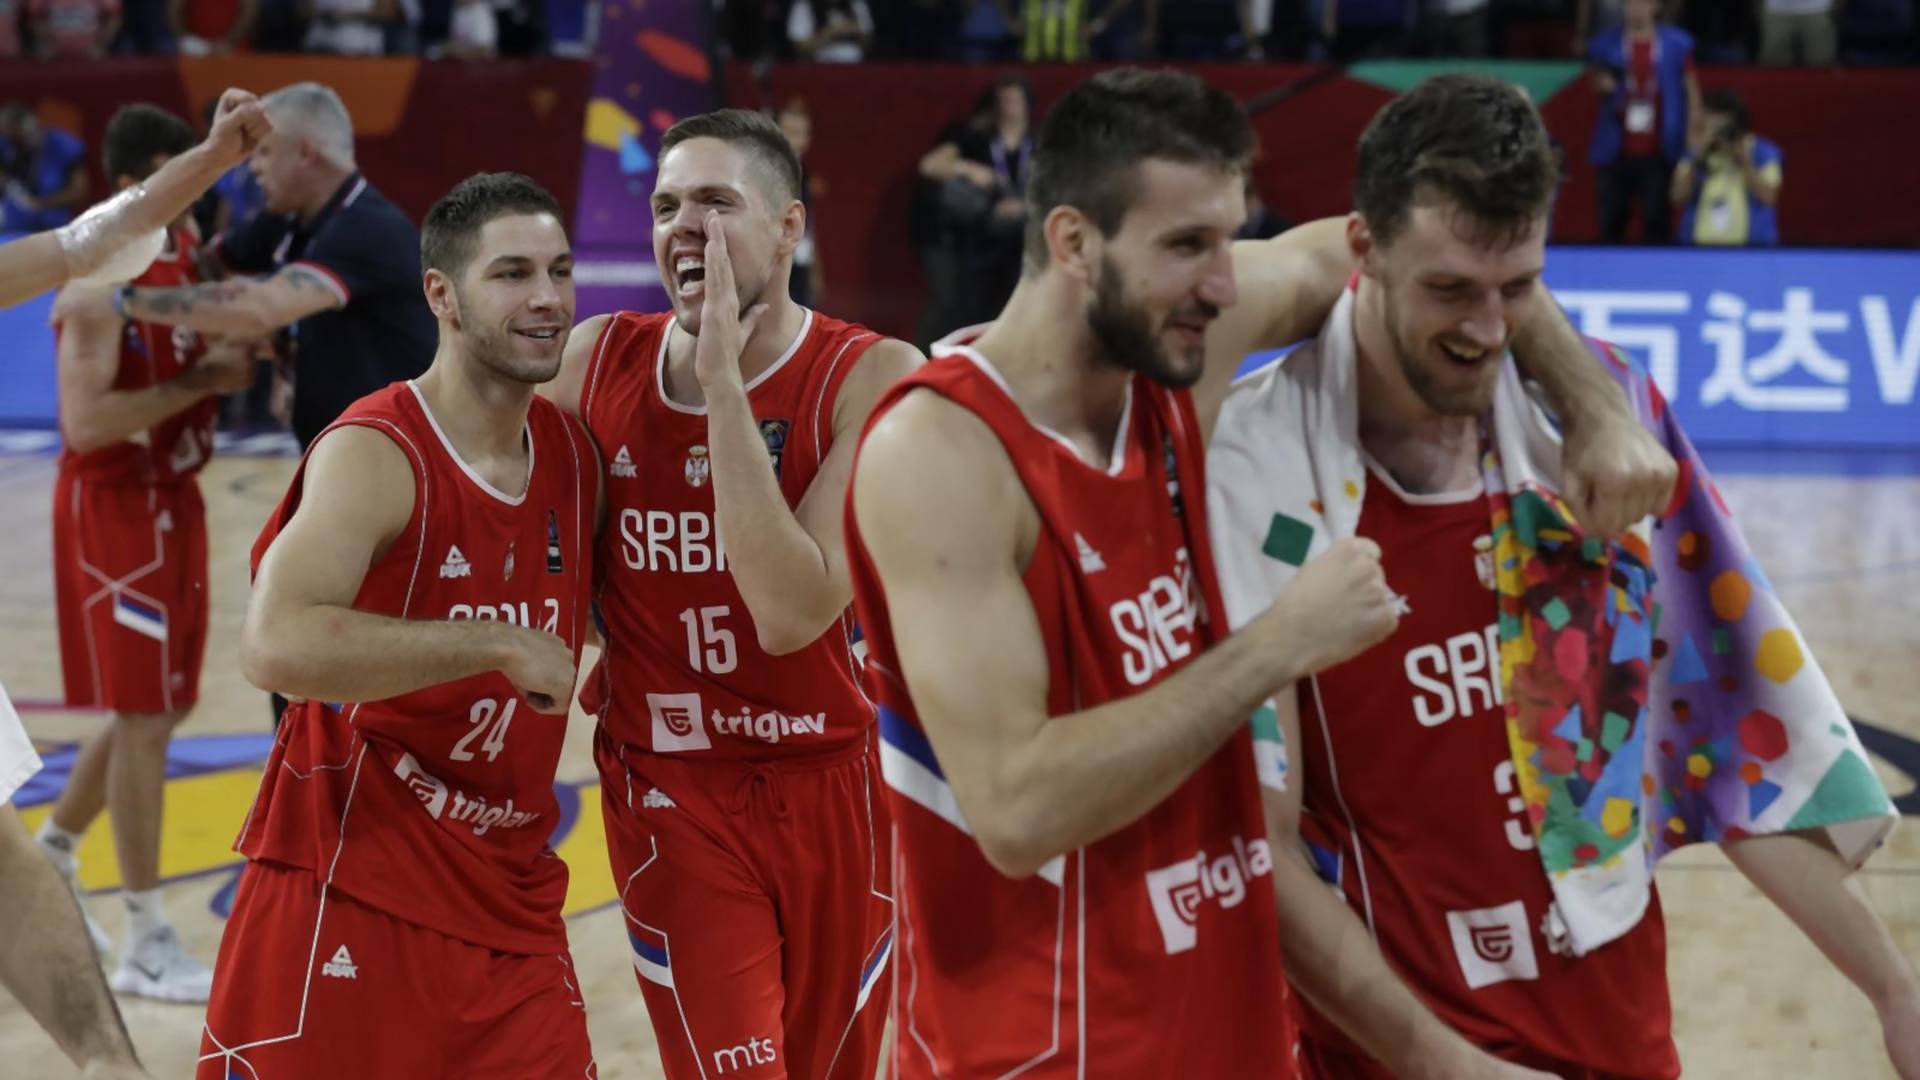 Genijalan komentar Hrvata na pobedu srpskih košarkaša